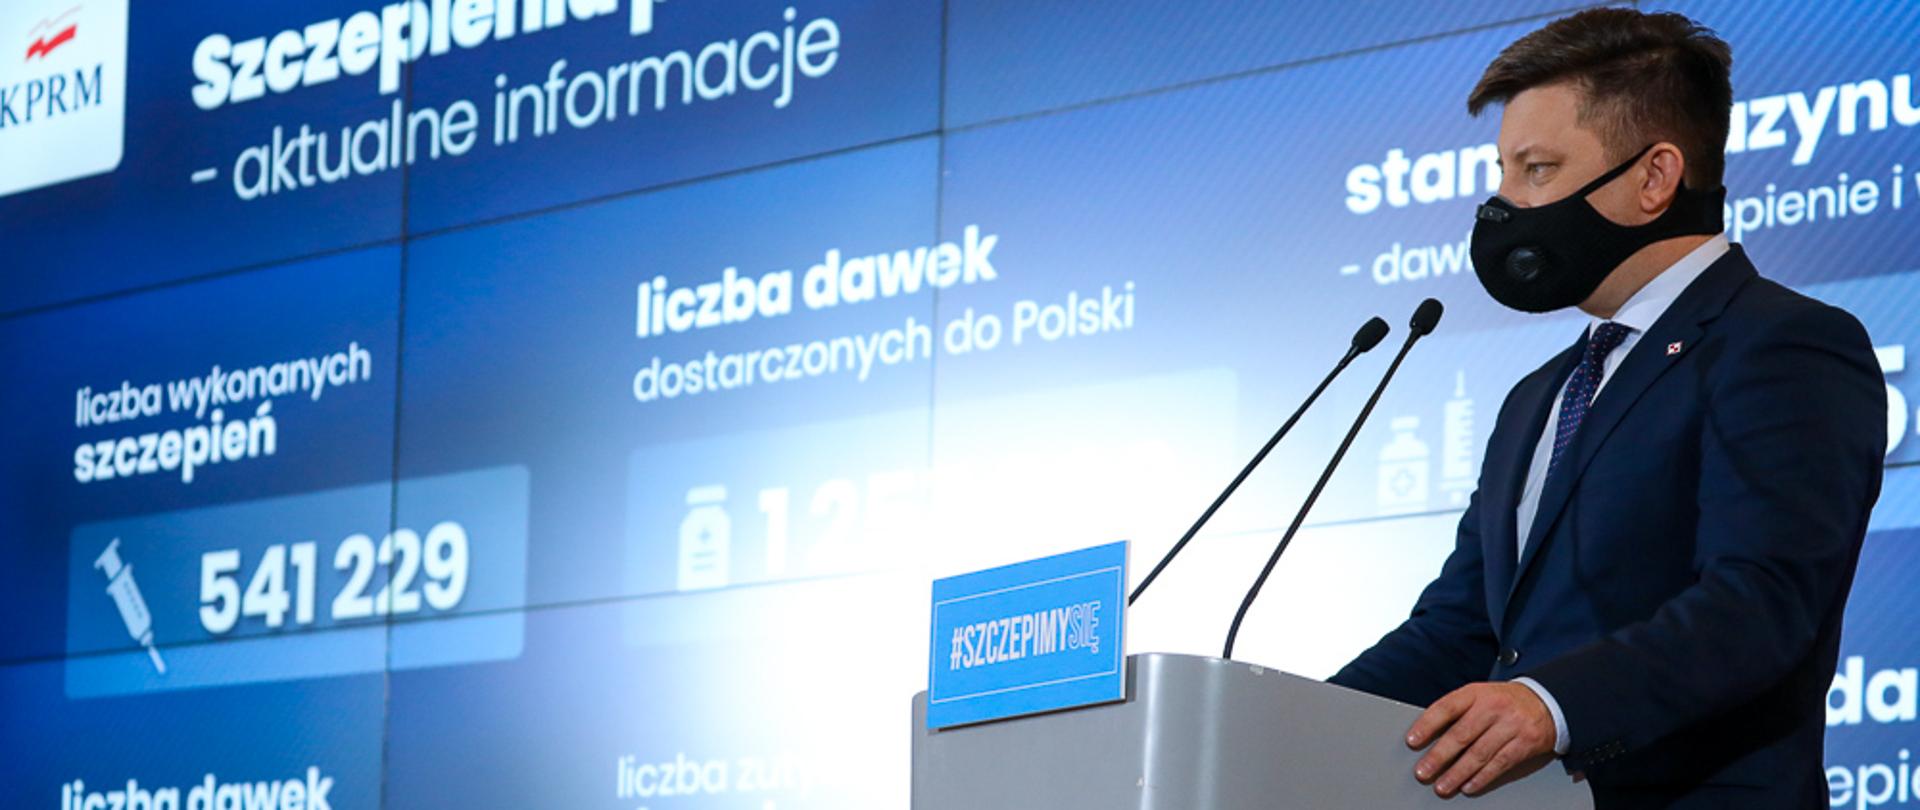 Szef KPRM Michał Dworczyk podczas konferencji prasowej. W tle ekran z informacjami nt. szczepień przeciwko Covid-19.